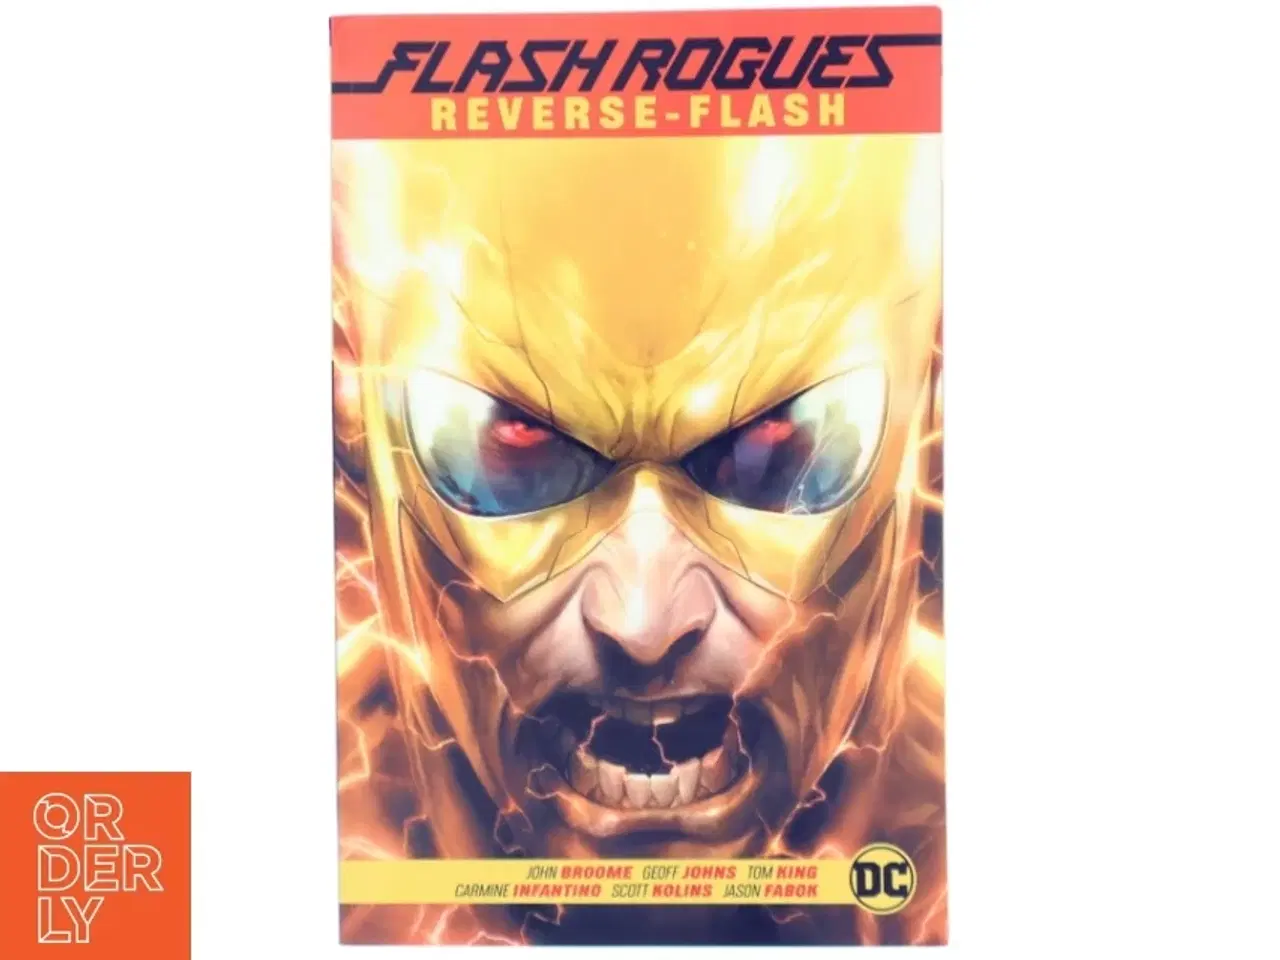 Billede 1 - The Flash Rogues: Reverse Flash af Various (Bog)